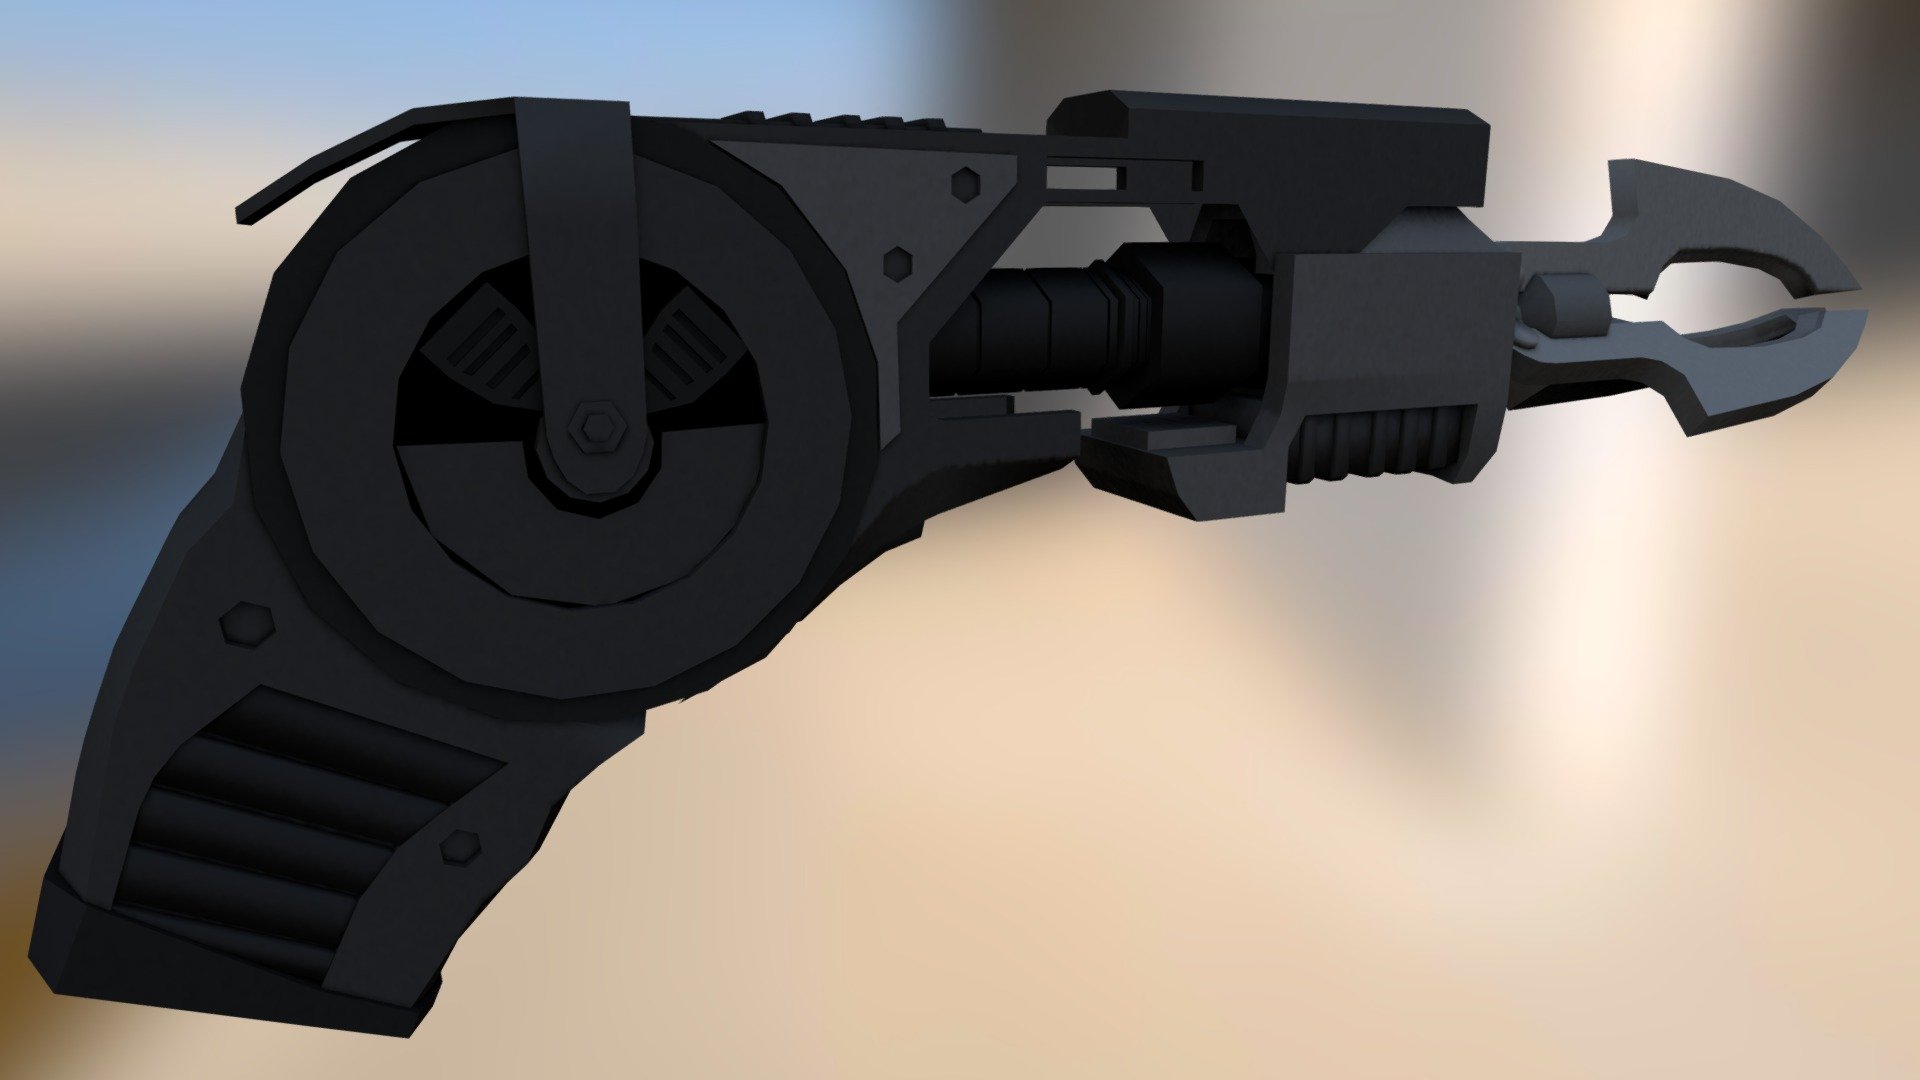 Batman Grapnel Gun (no textures)